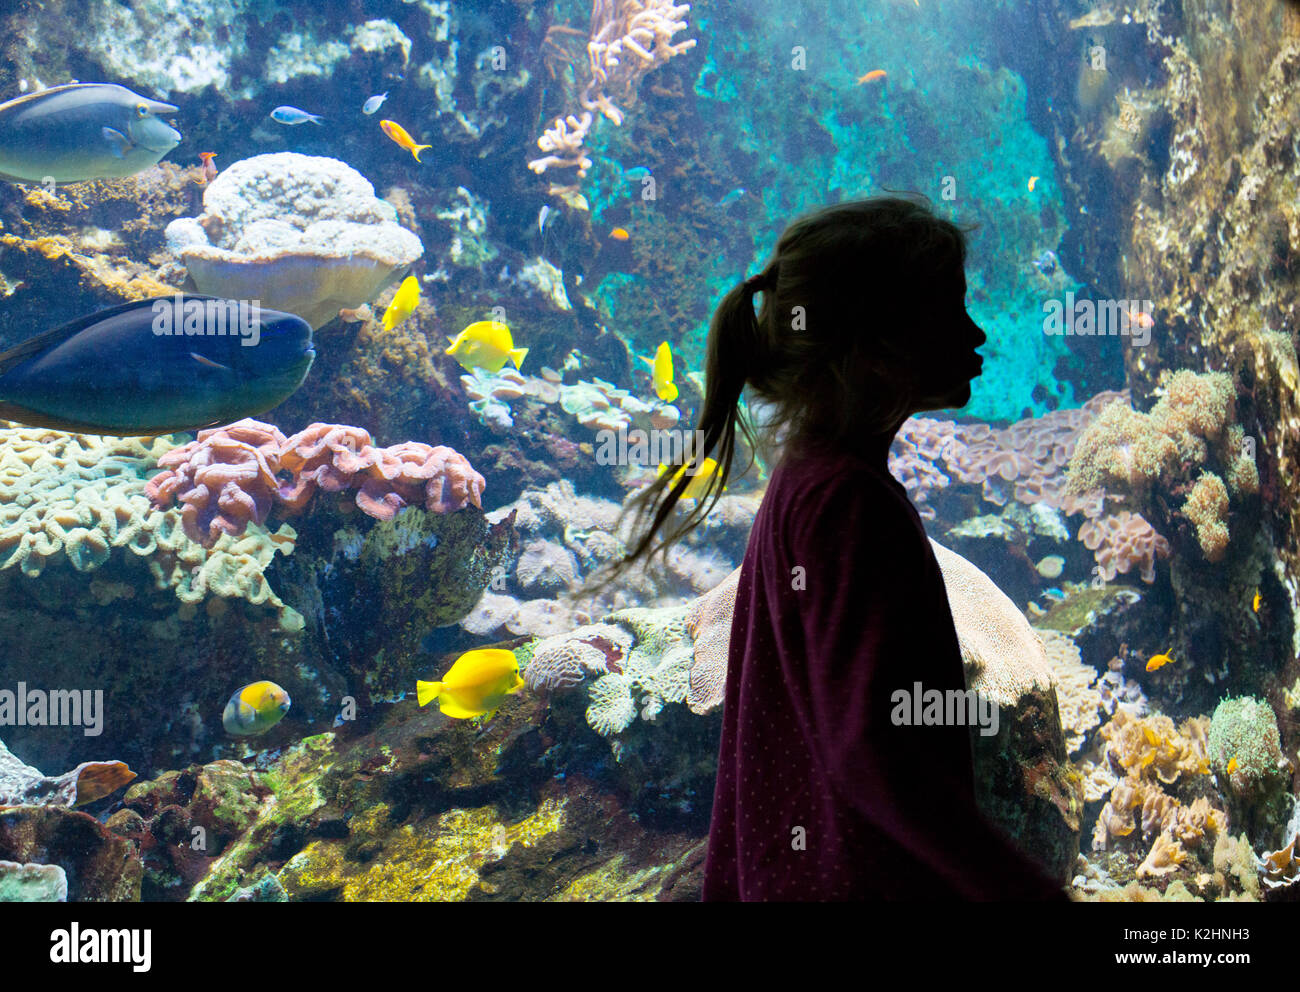 Aquarium - das große Aquarium, Saint Malo, Bretagne Frankreich - ein junges Mädchen vor ein Tank von bunten Fischen und Korallen, St Malo, Bretagne Frankreich Stockfoto